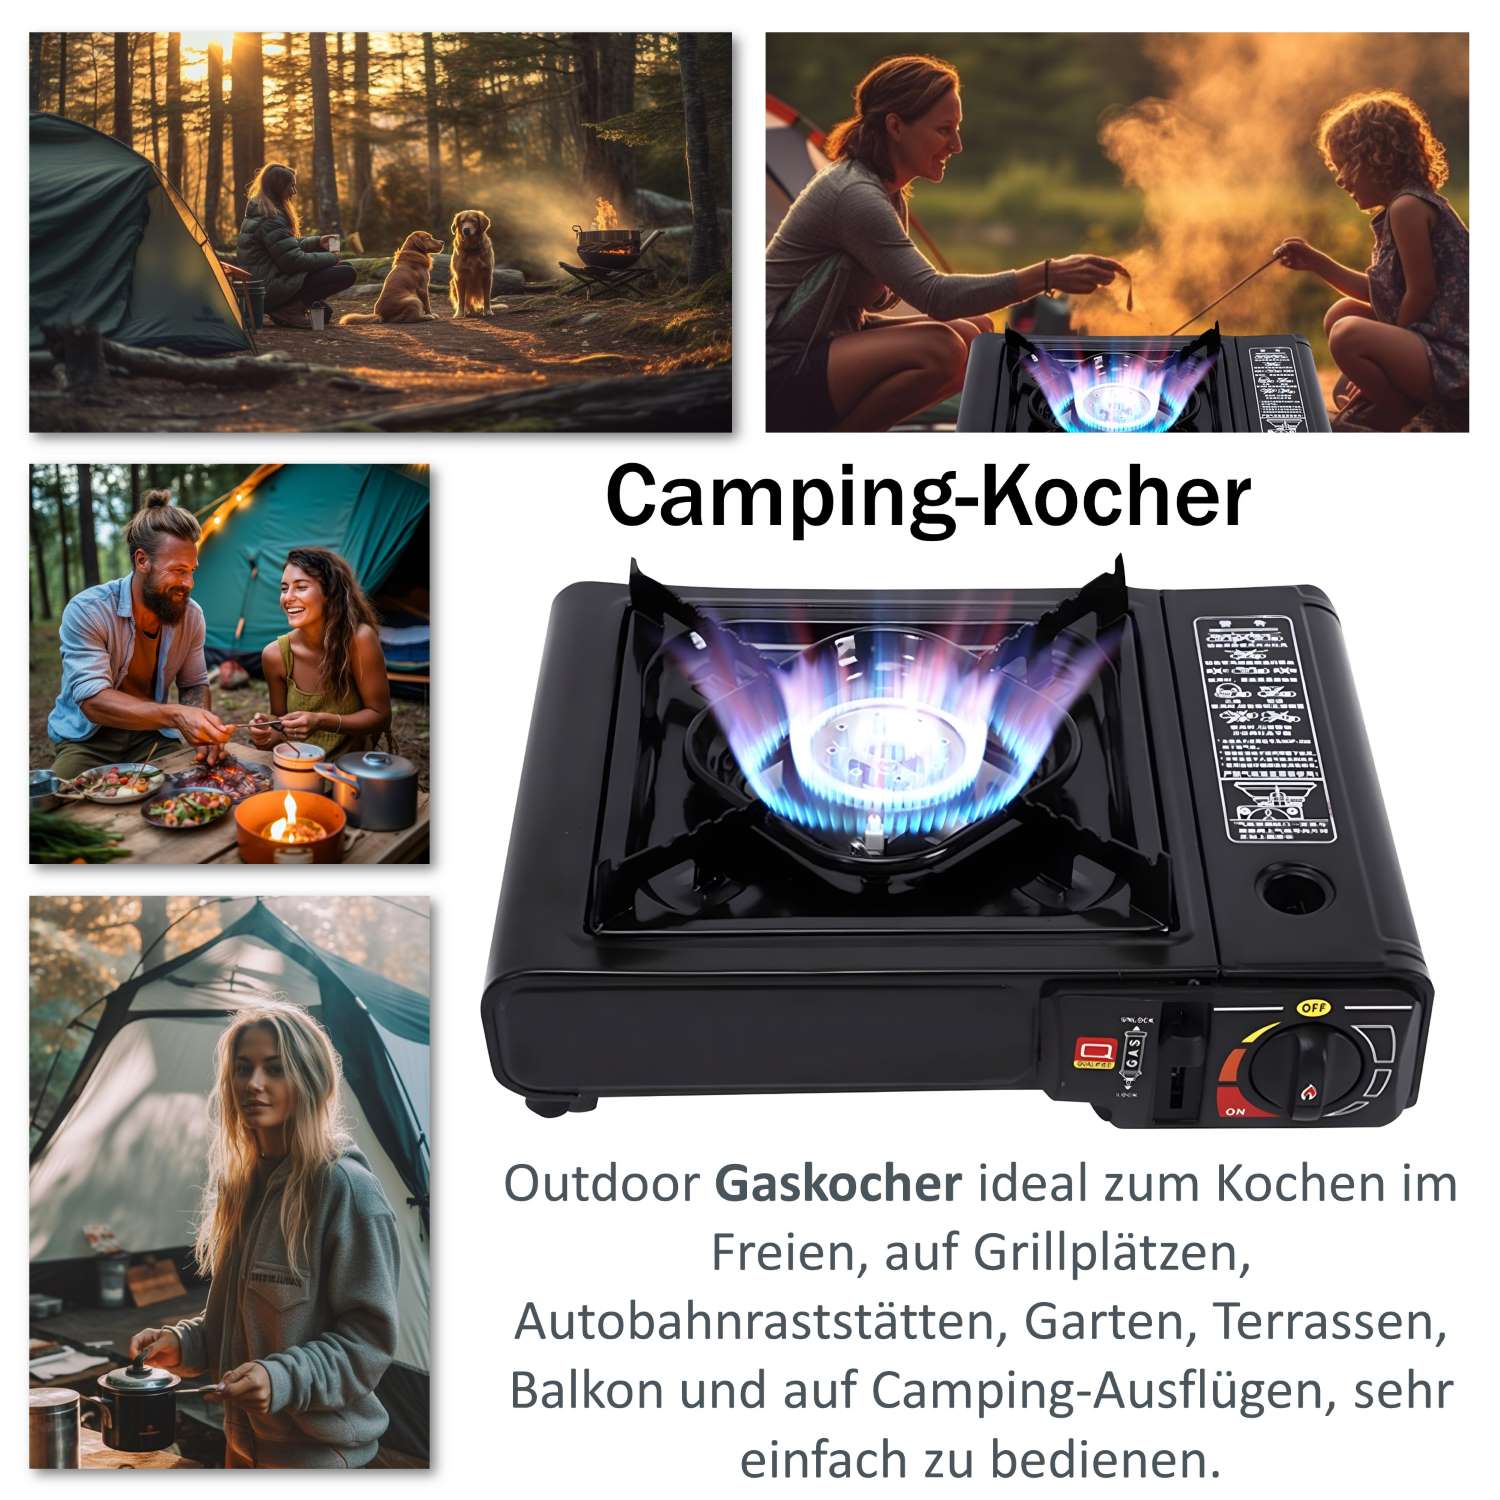 Campingkocher Gaskocher Gasherd Herd Kochfeld Tischkocher Outdoor Portable Campingherd